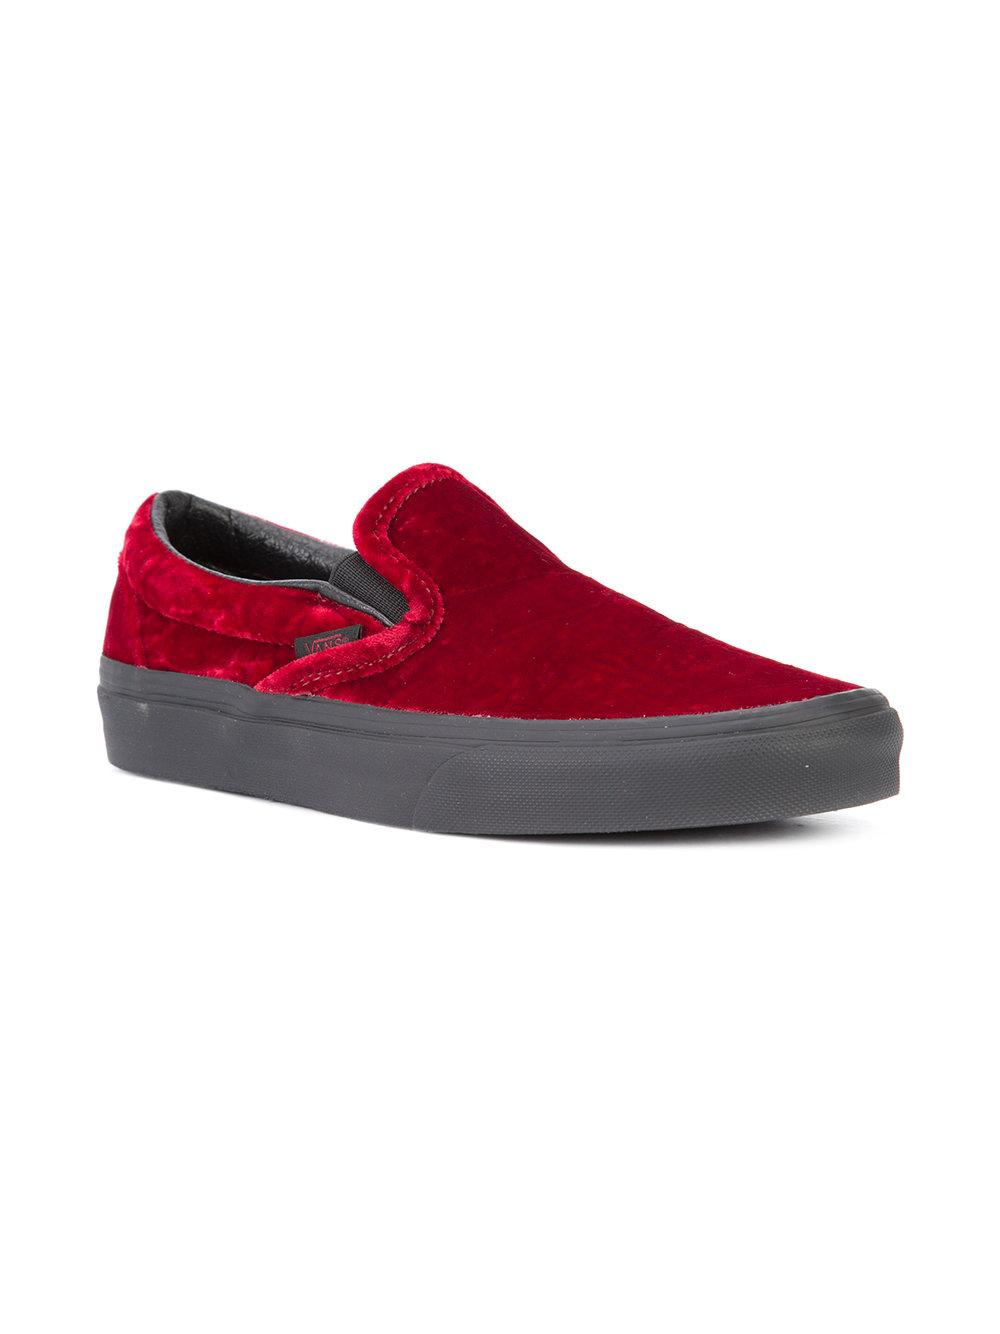 Vans Velvet Slip-on Sneakers in Red for Men - Lyst